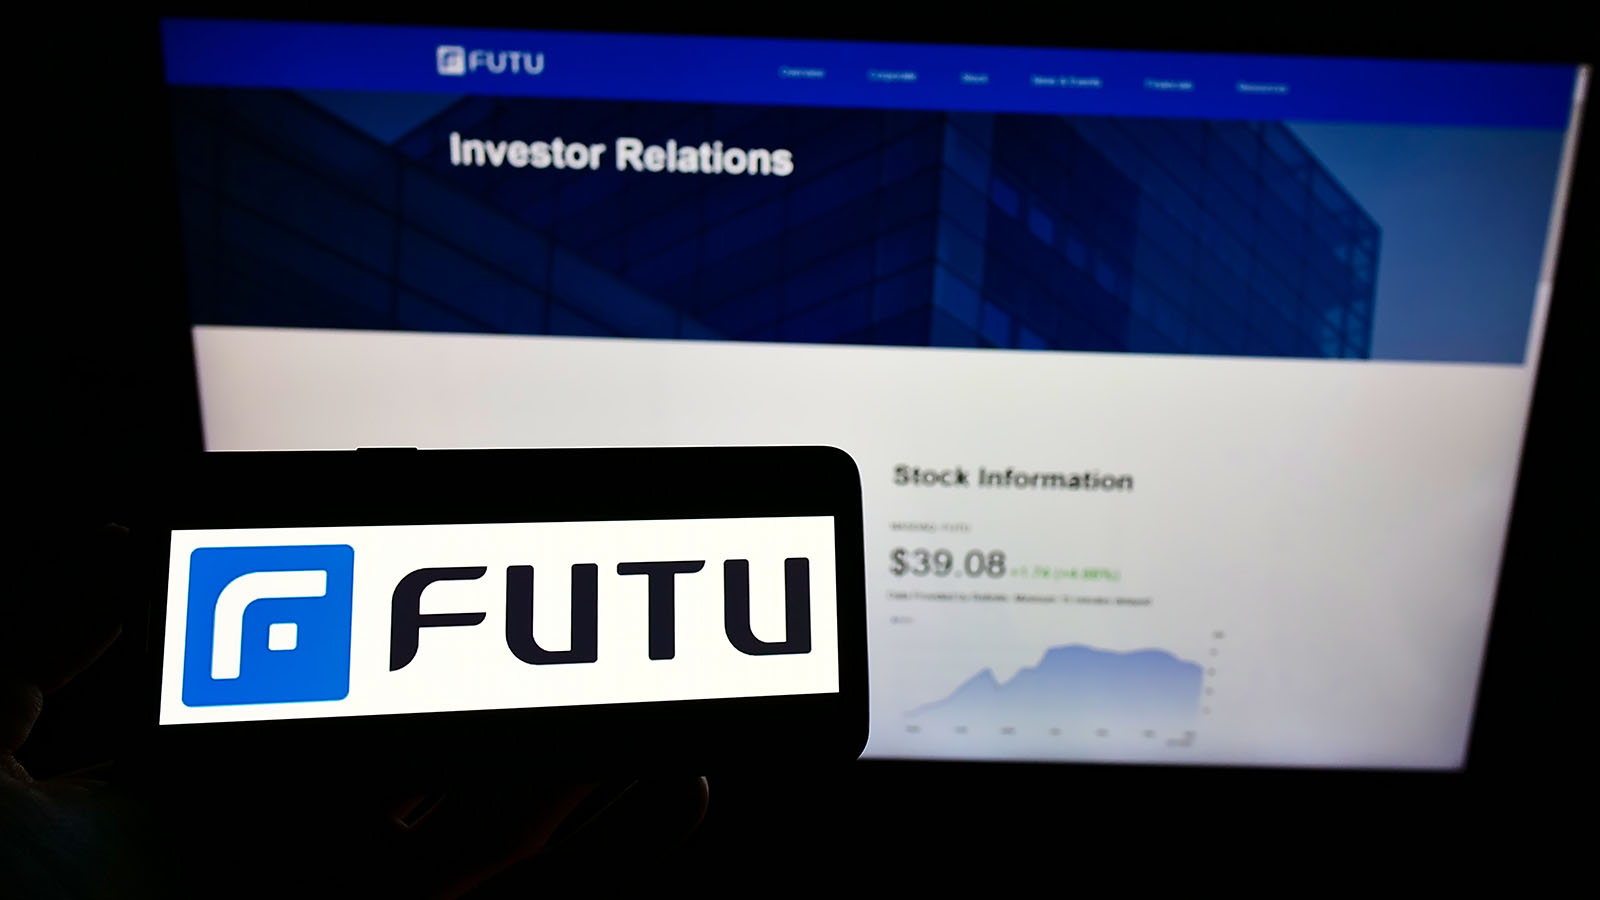 An iPhone screen displaying the Futu Holdings logo futu stock.